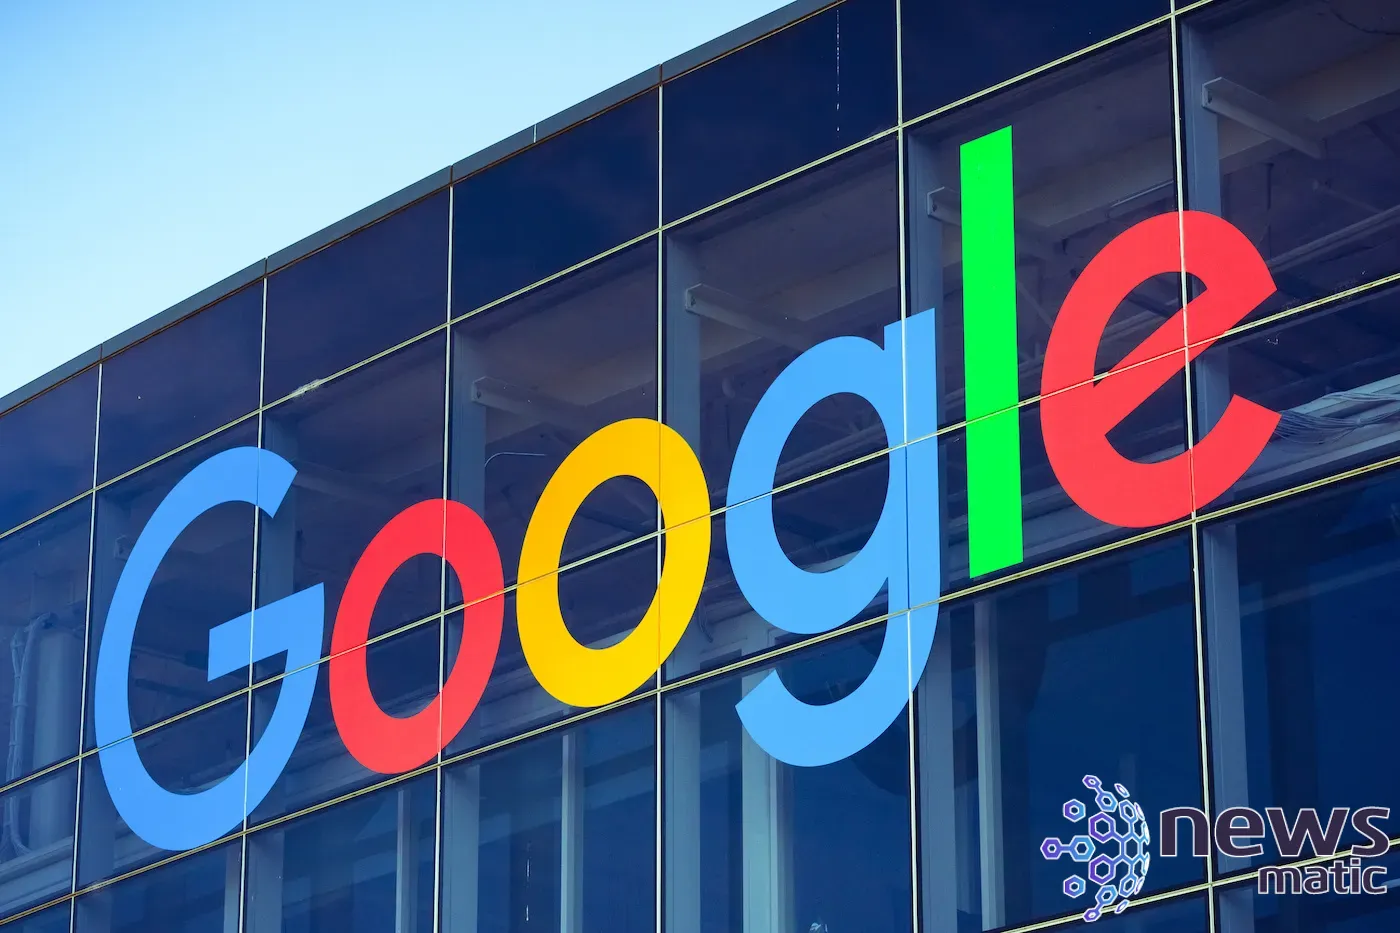 Google lanza un programa de certificación en ciberseguridad para abordar la escasez de personal - Seguridad | Imagen 1 Newsmatic